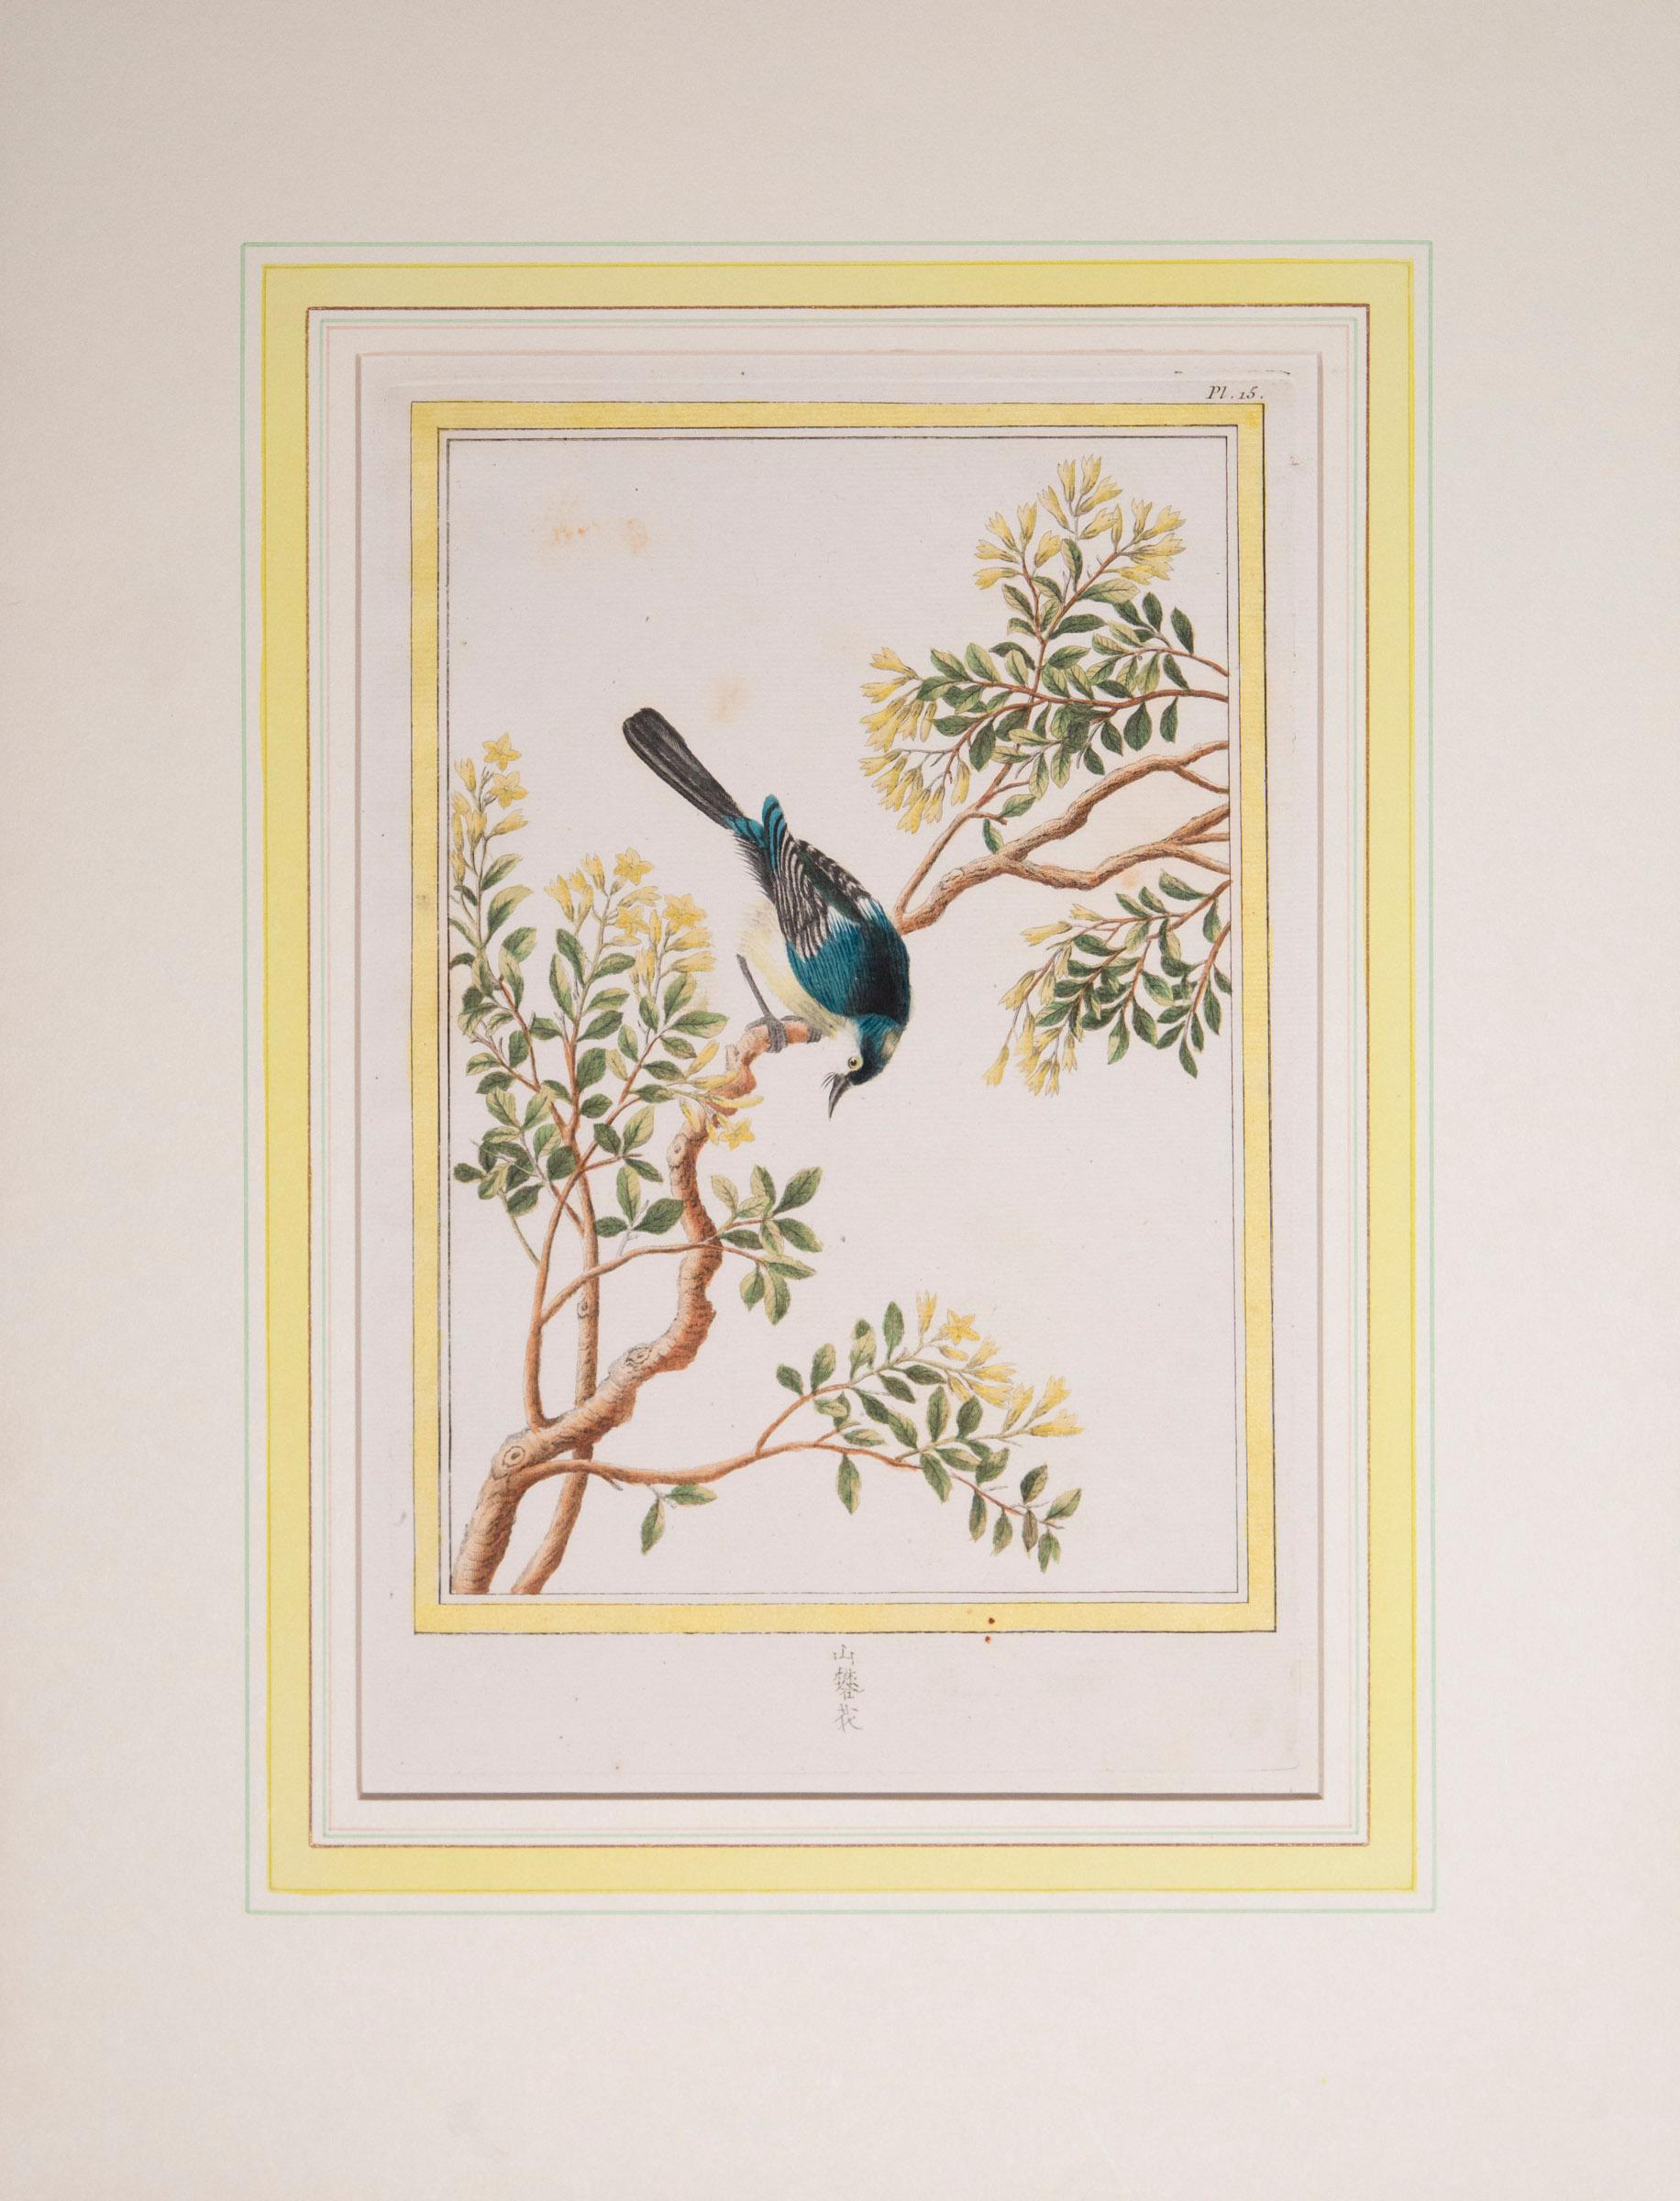 A set of six of exceptional quality 18th century hand-colored engravings
Buchoz, Pierre Joseph. Collection précieuse et enluminée des fleurs les plus belles et les plus curieuses, qui se cultivent tant dans les jardins de la Chine, que dans ceux de